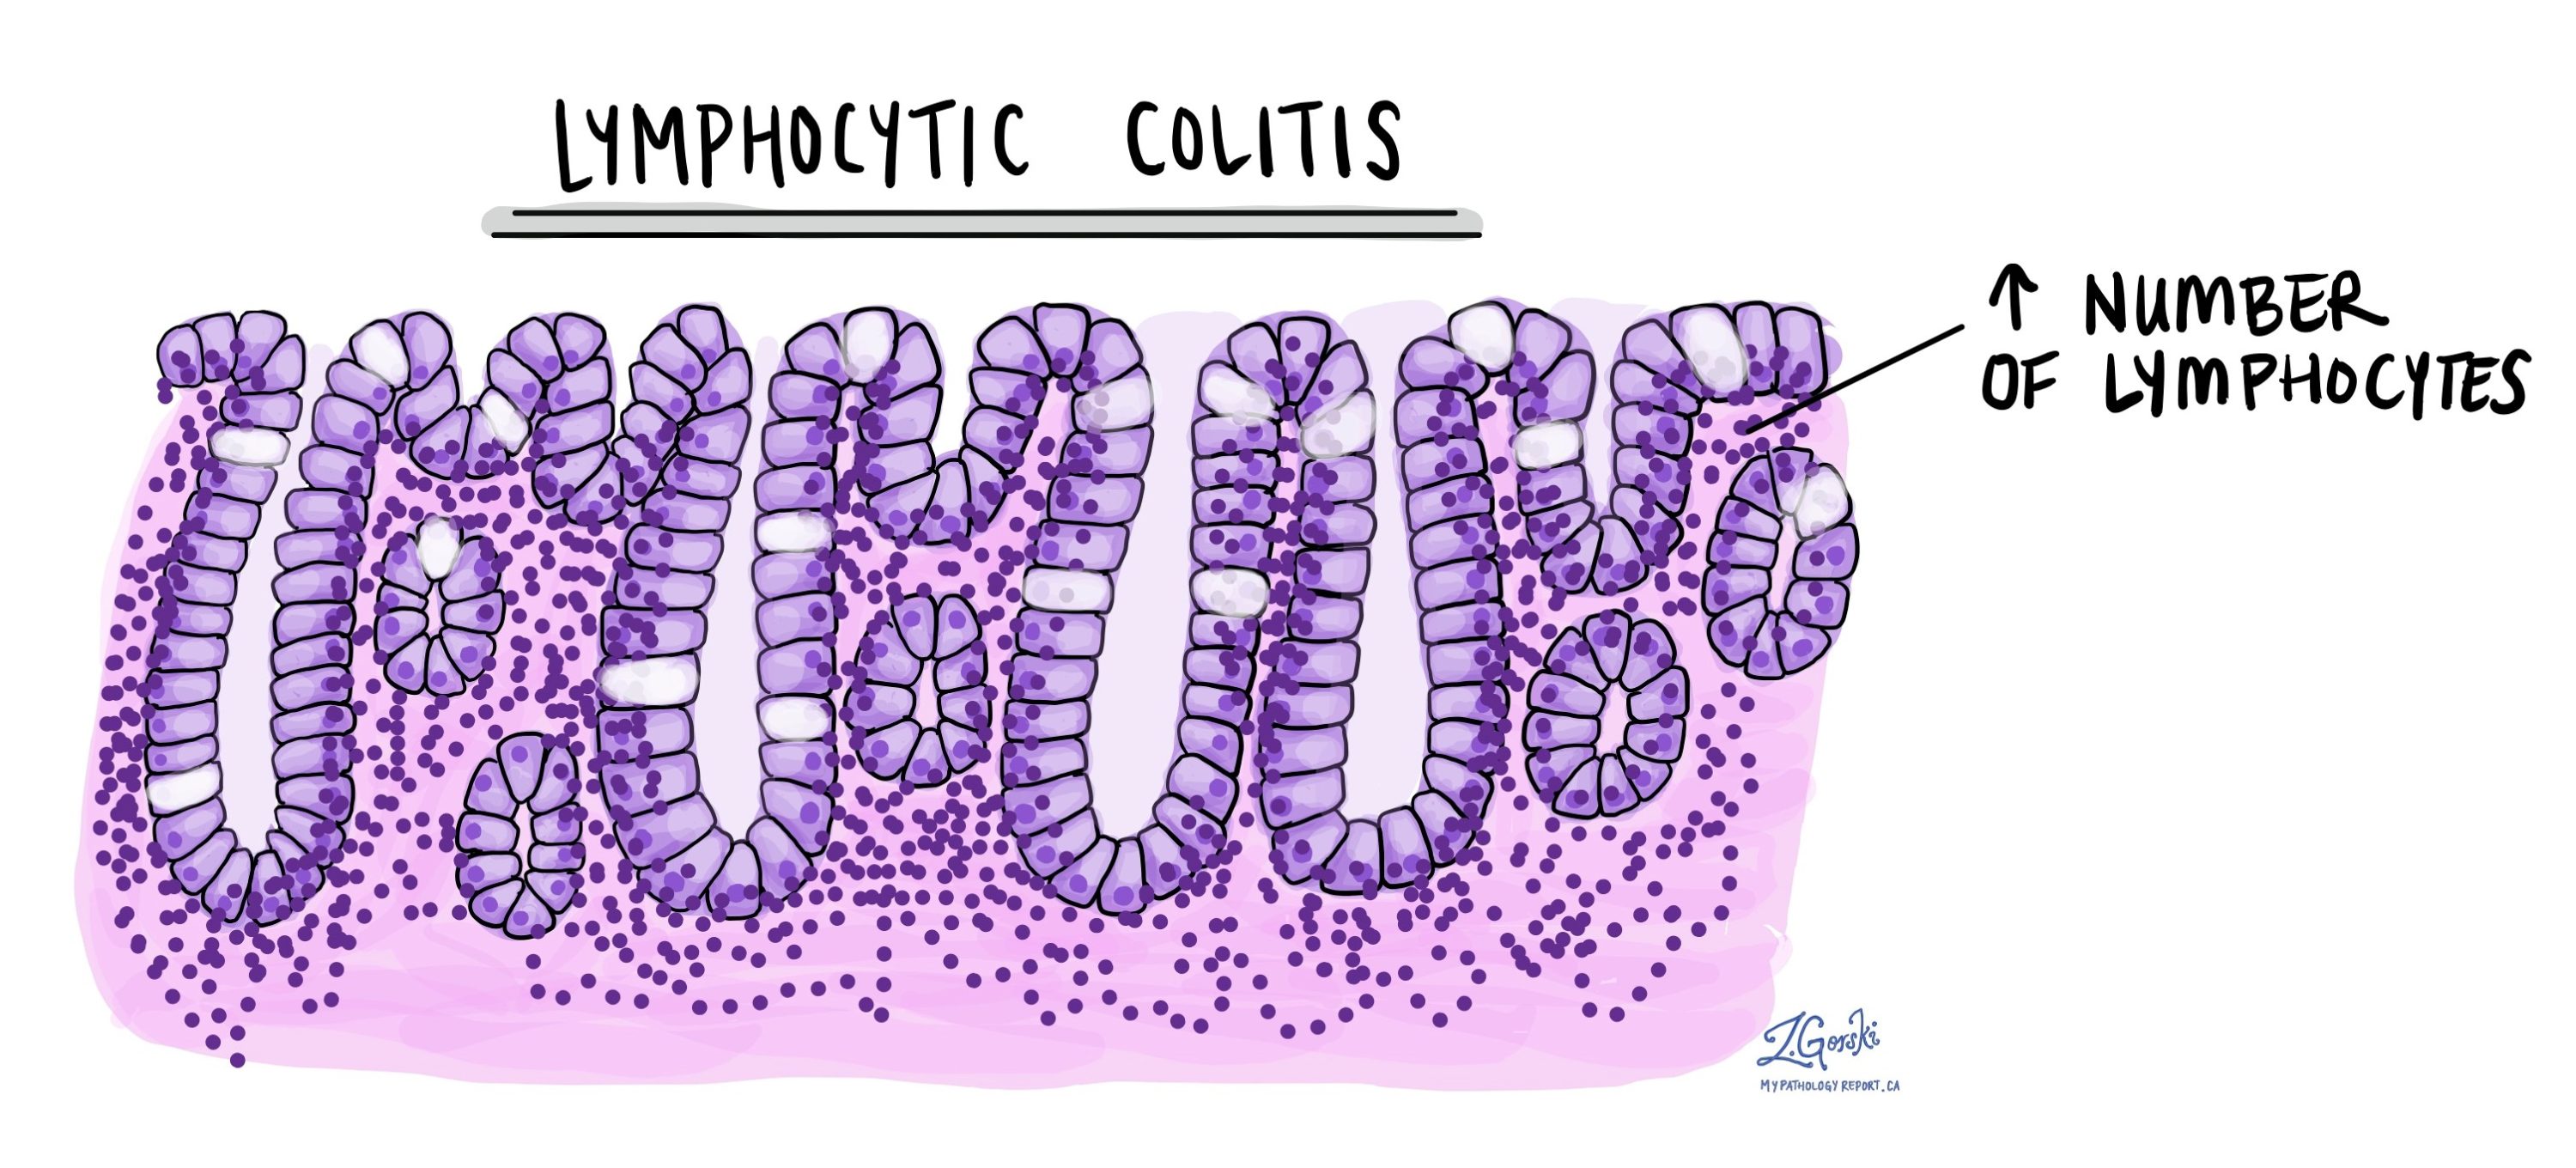 Lymphocytic Colitis